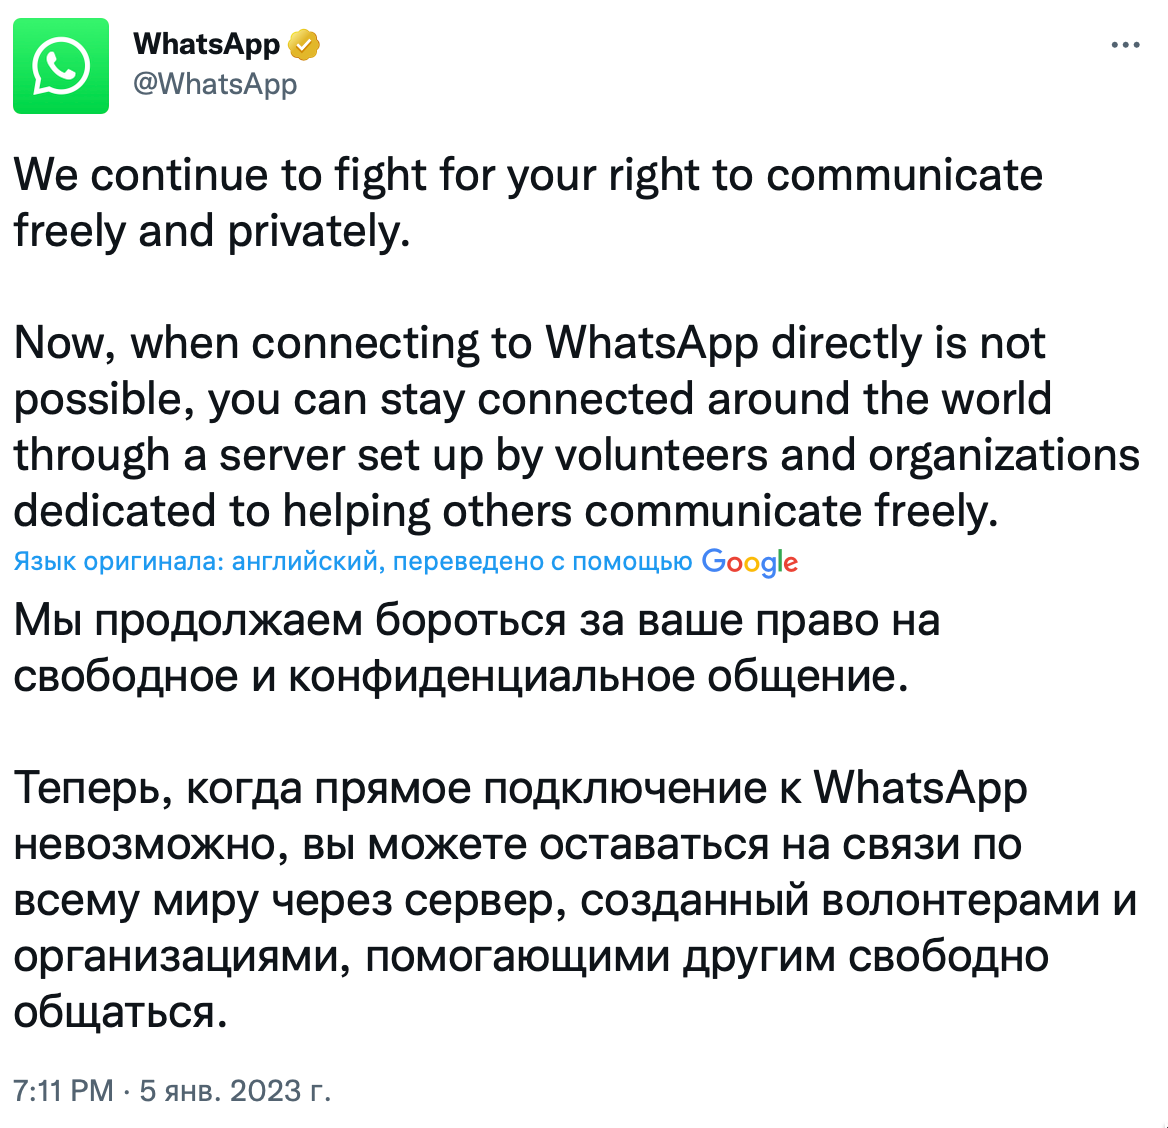 Как обойти блокировку телеграмма в казахстане на андроид фото 59